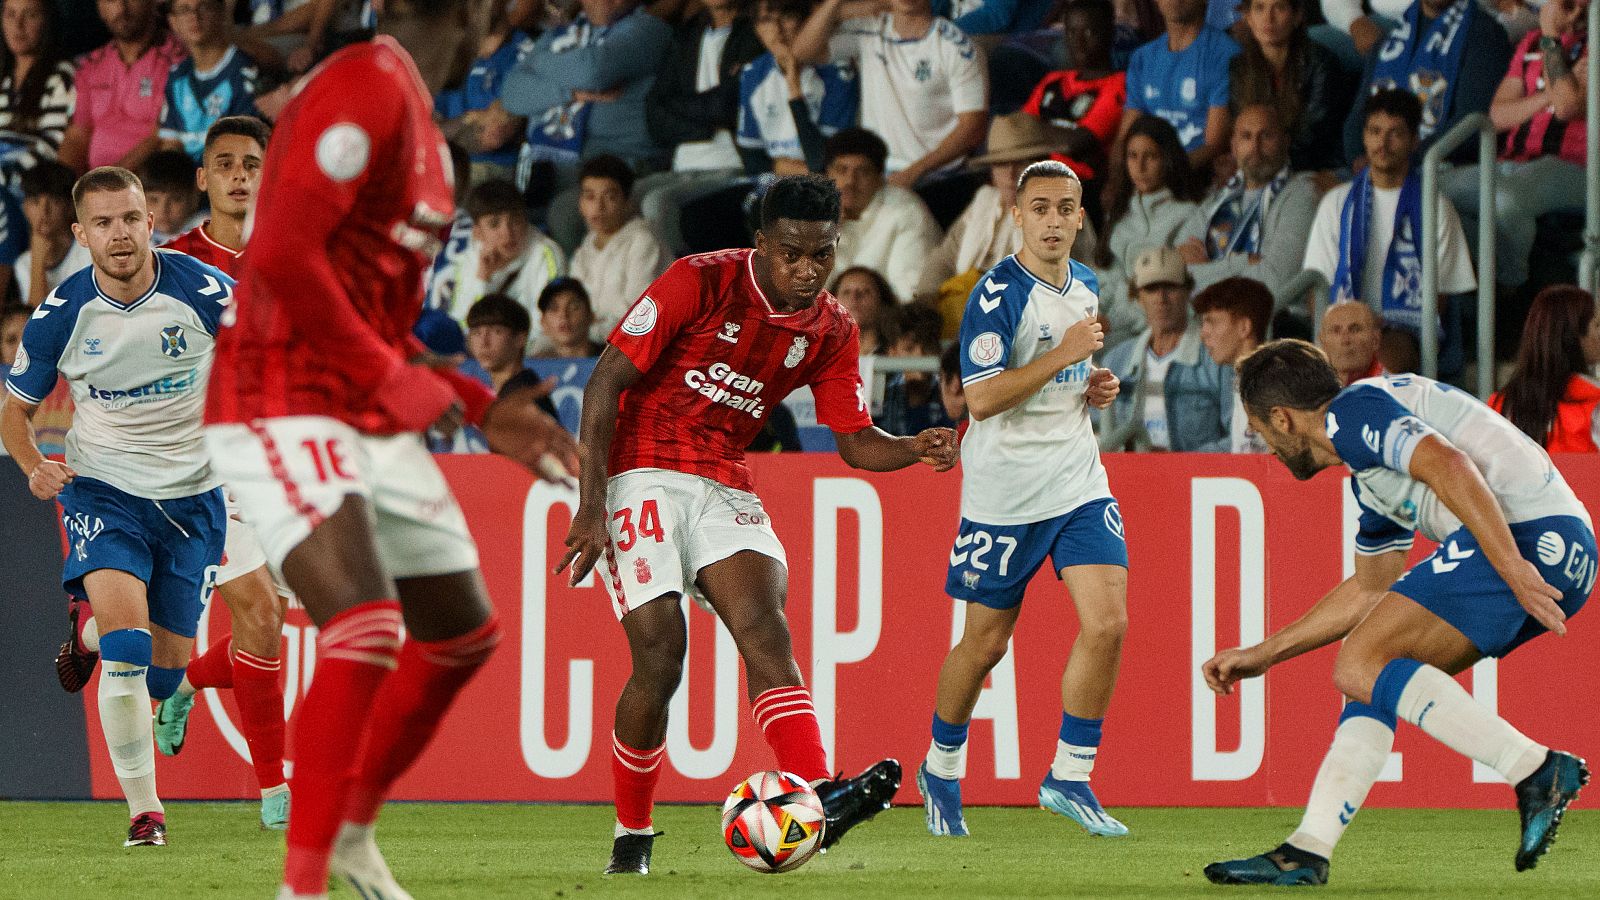 El Tenerife y la Real Sociedad avanzan a octavos en la Copa